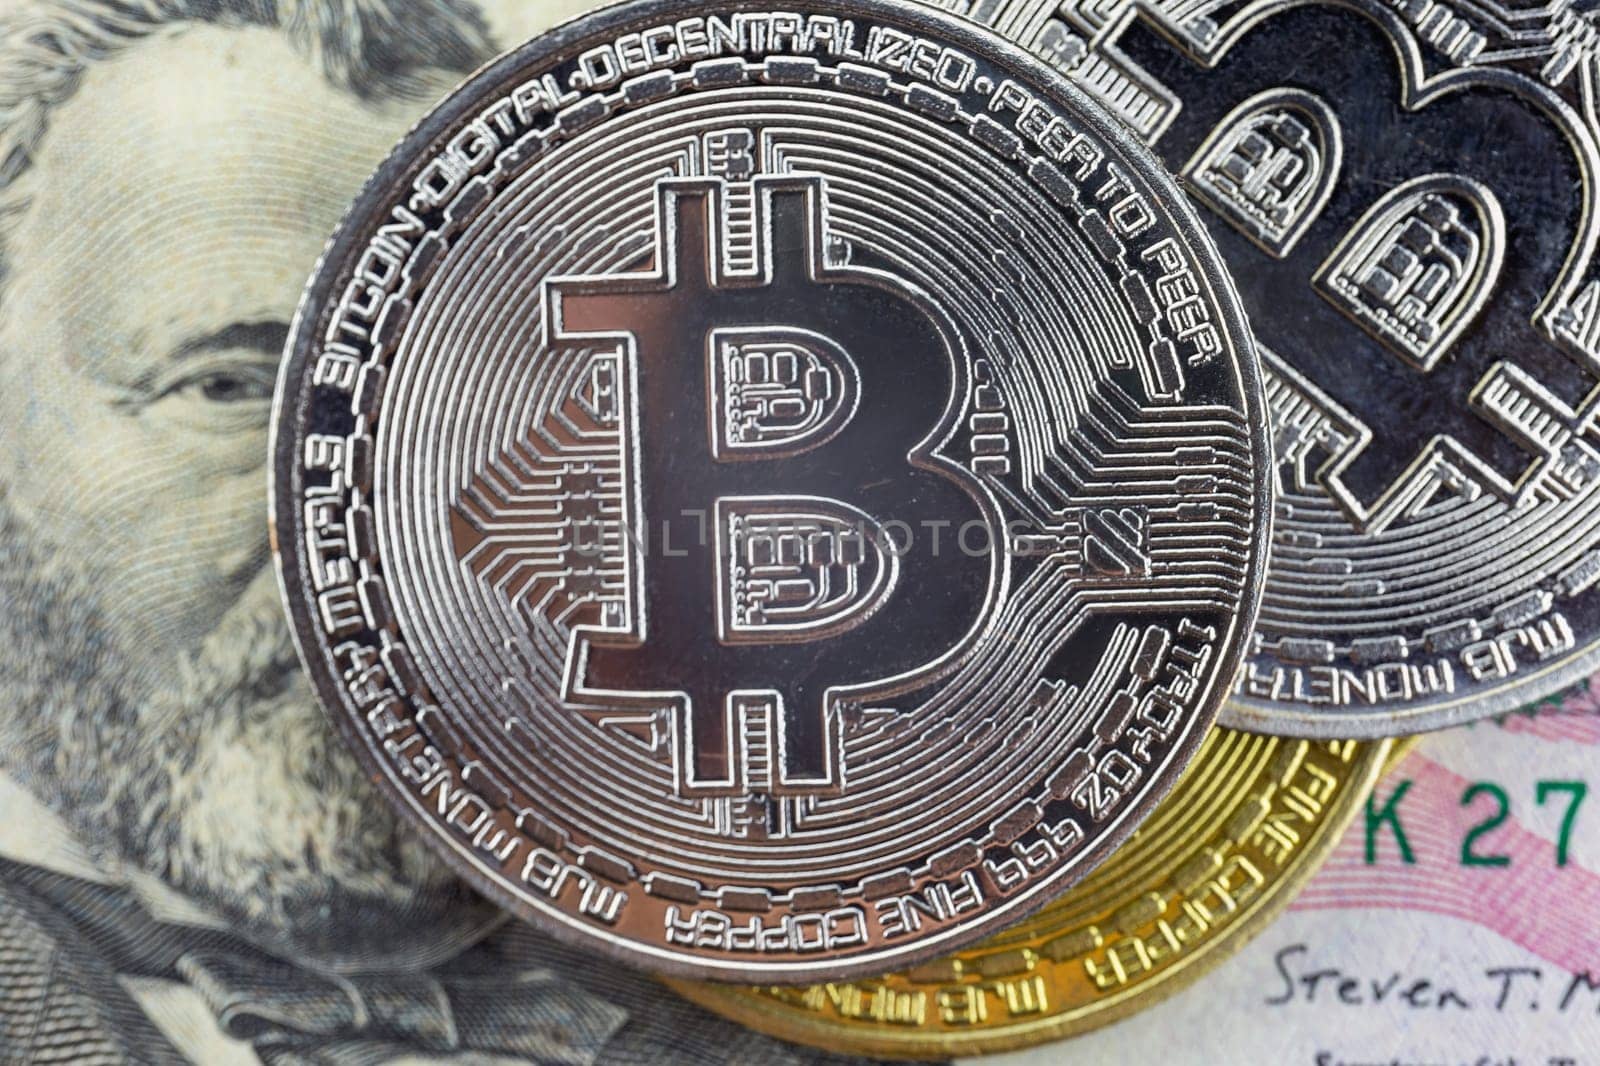 Bitcoin coins lie on a fifty dollar bill, close-up